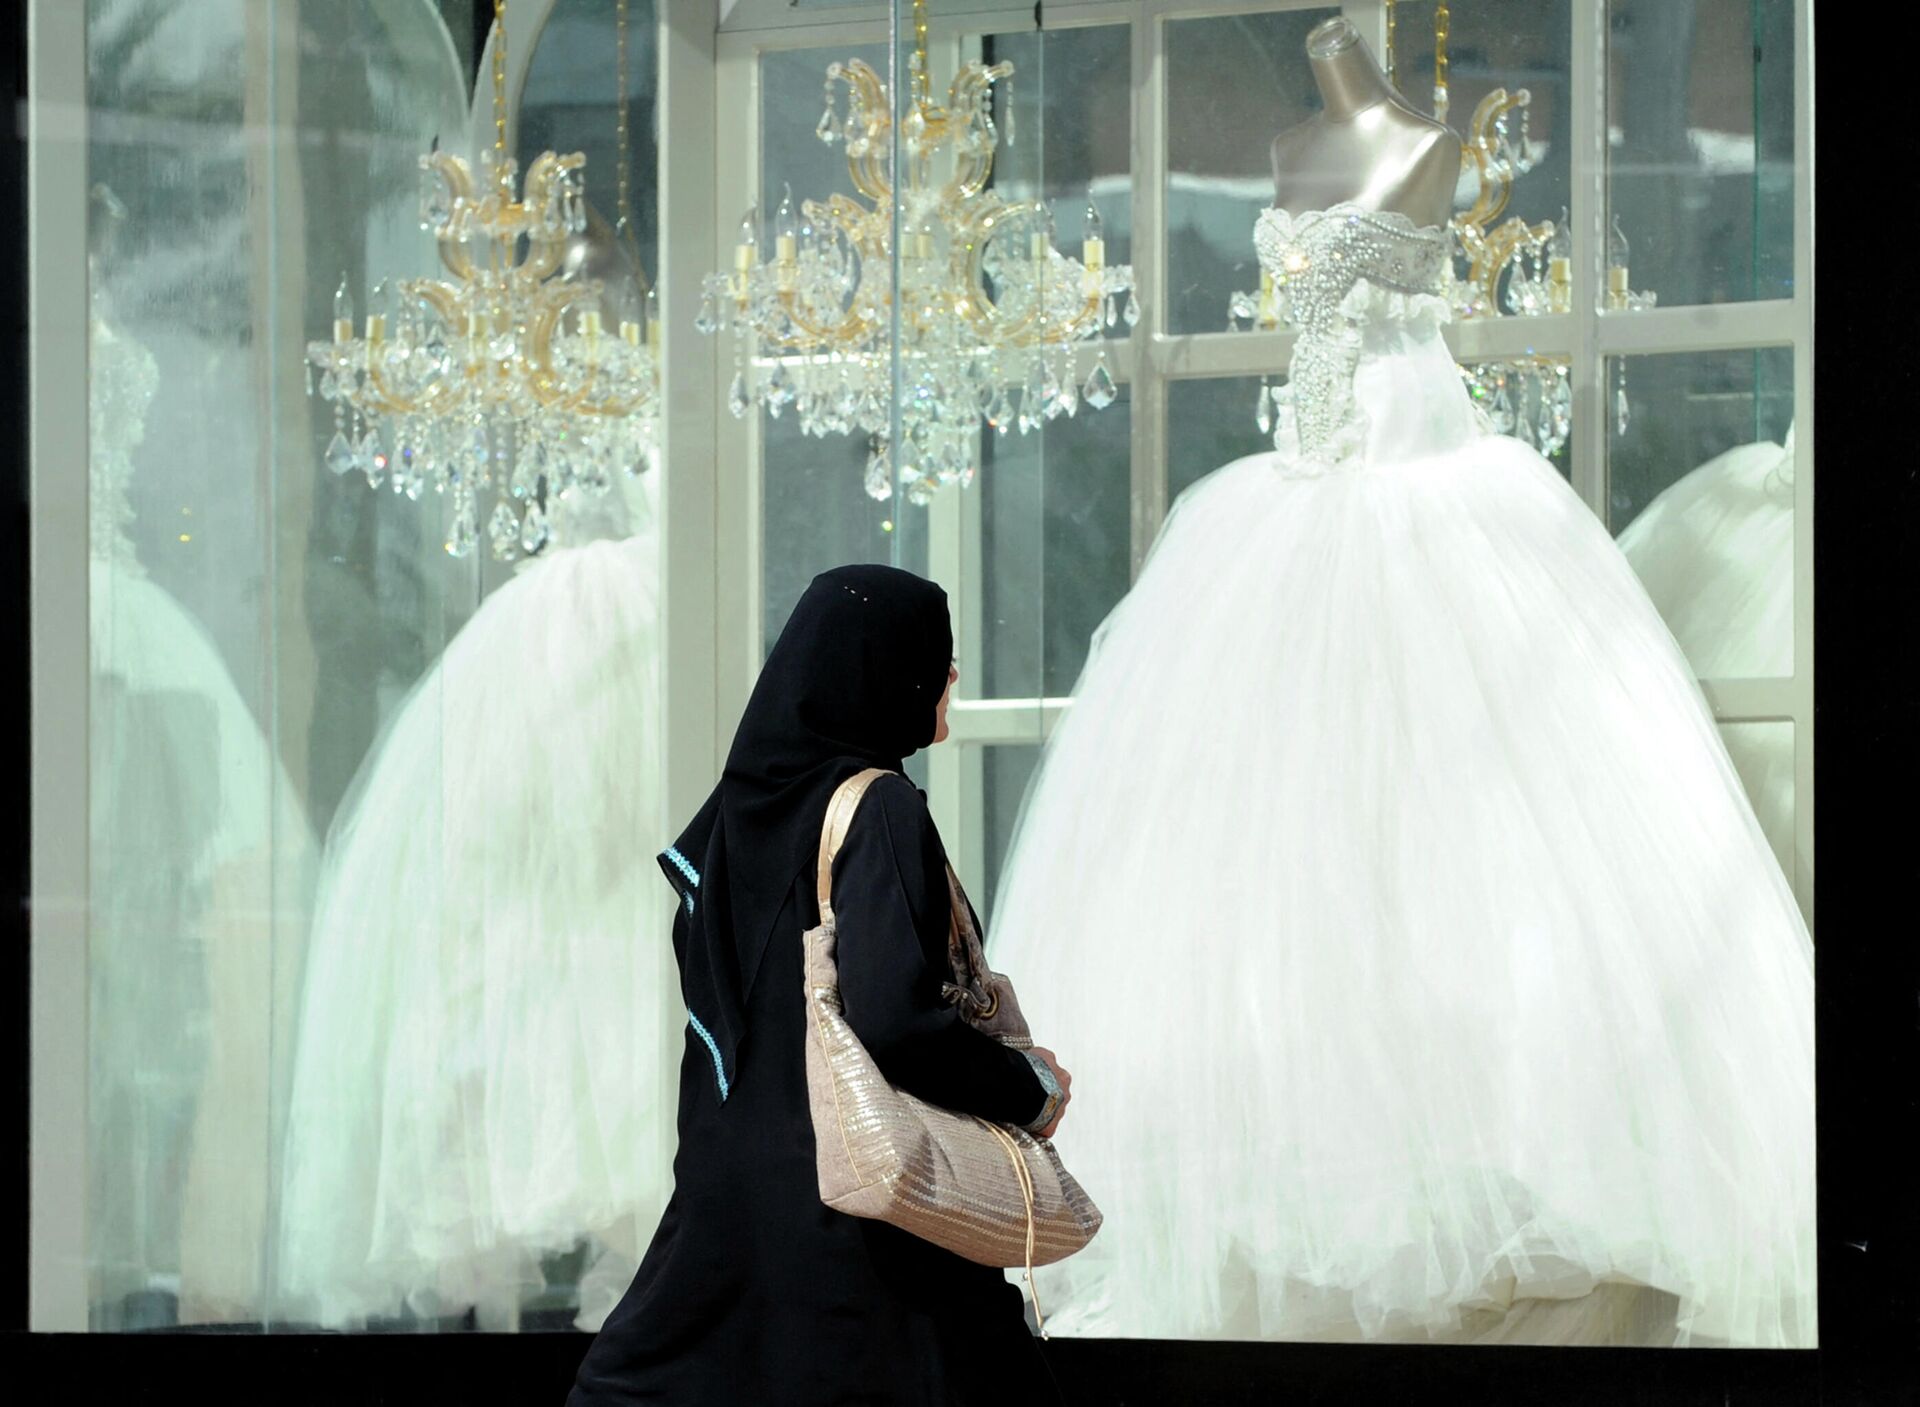 Девушка проходит мимо свадебного салона в Эр-Рияде, Саудовская Аравия  - Sputnik Latvija, 1920, 27.08.2021